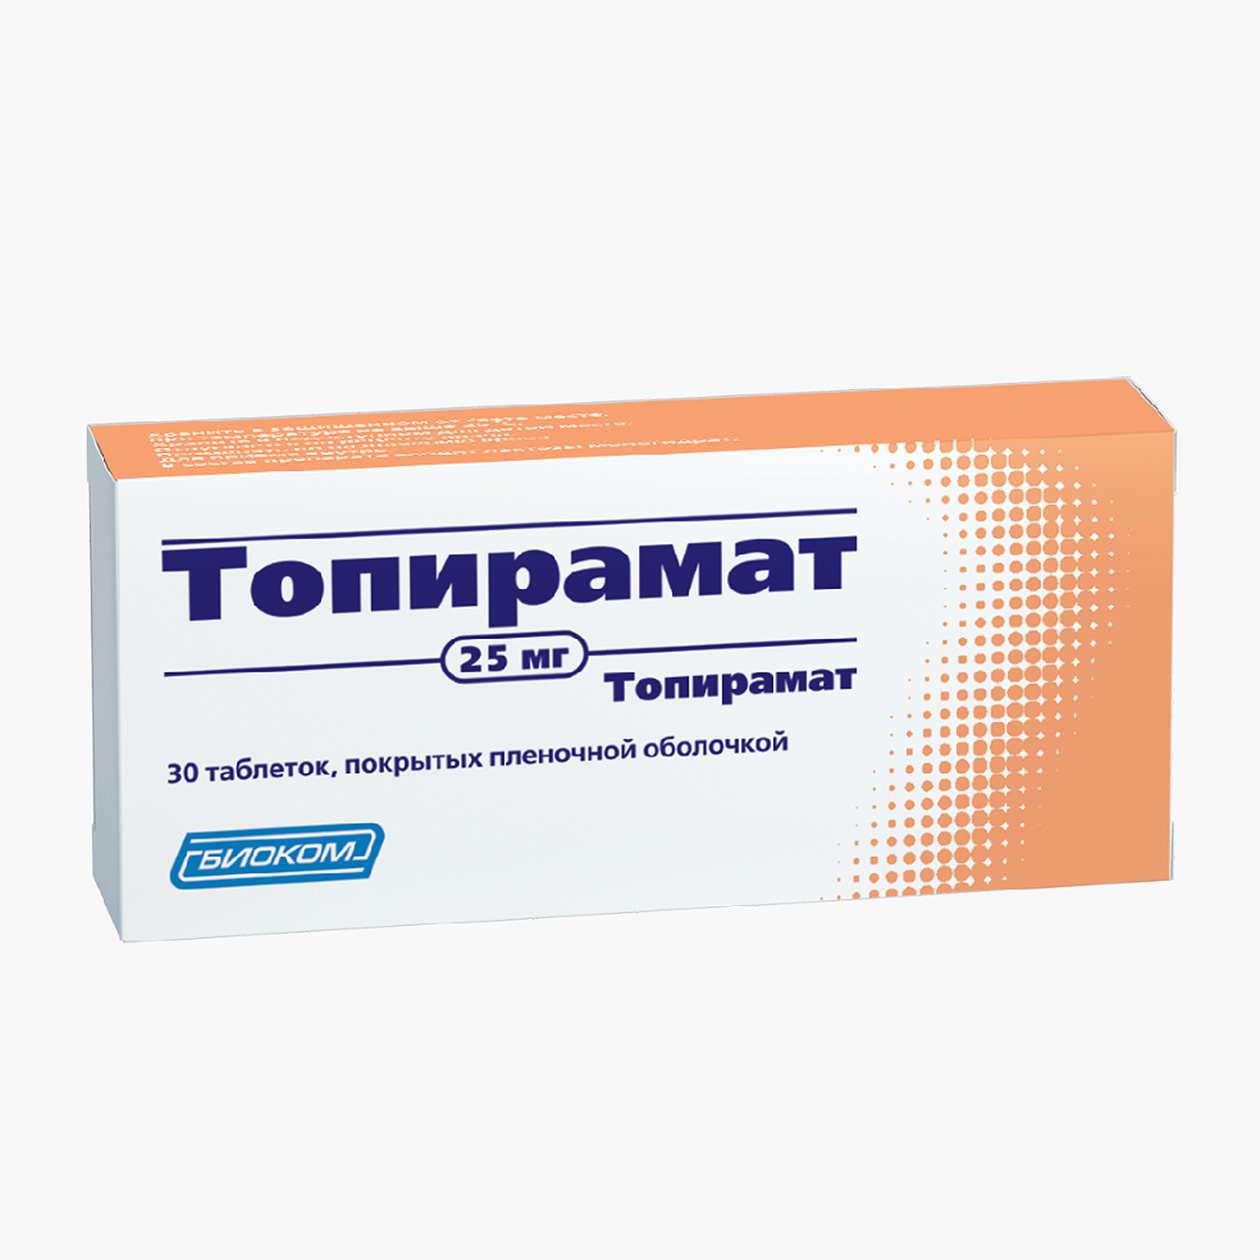 Стоимость 30 таблеток топирамата в минимальной дозировке 25 мг начинается со 190 ₽. Источник: gorzdrav.org